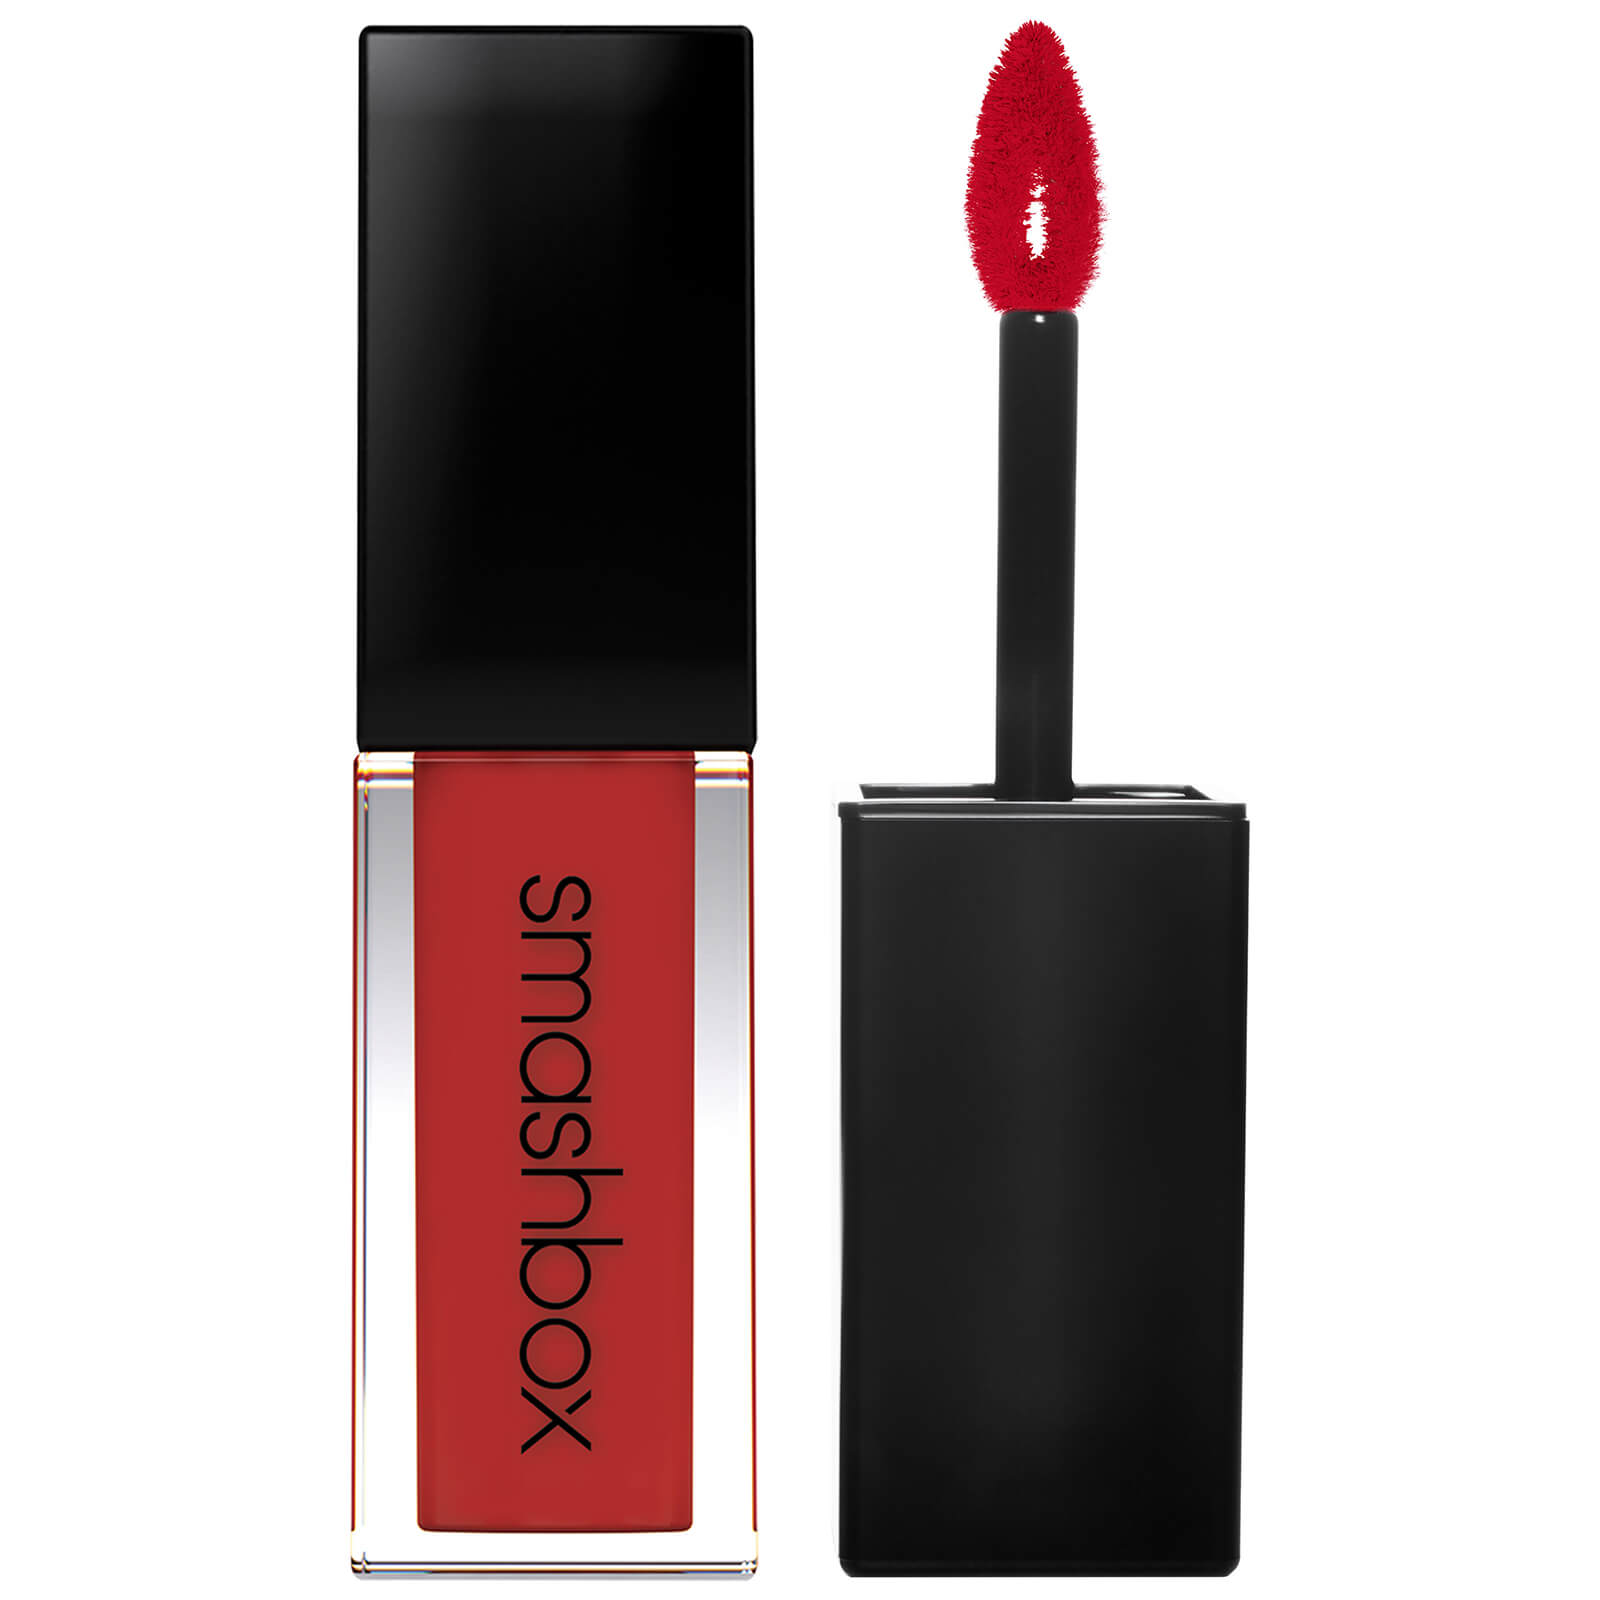 Smashbox Always On Matte Liquid Lipstick (Various Shades) - Bawse (Deep Red)